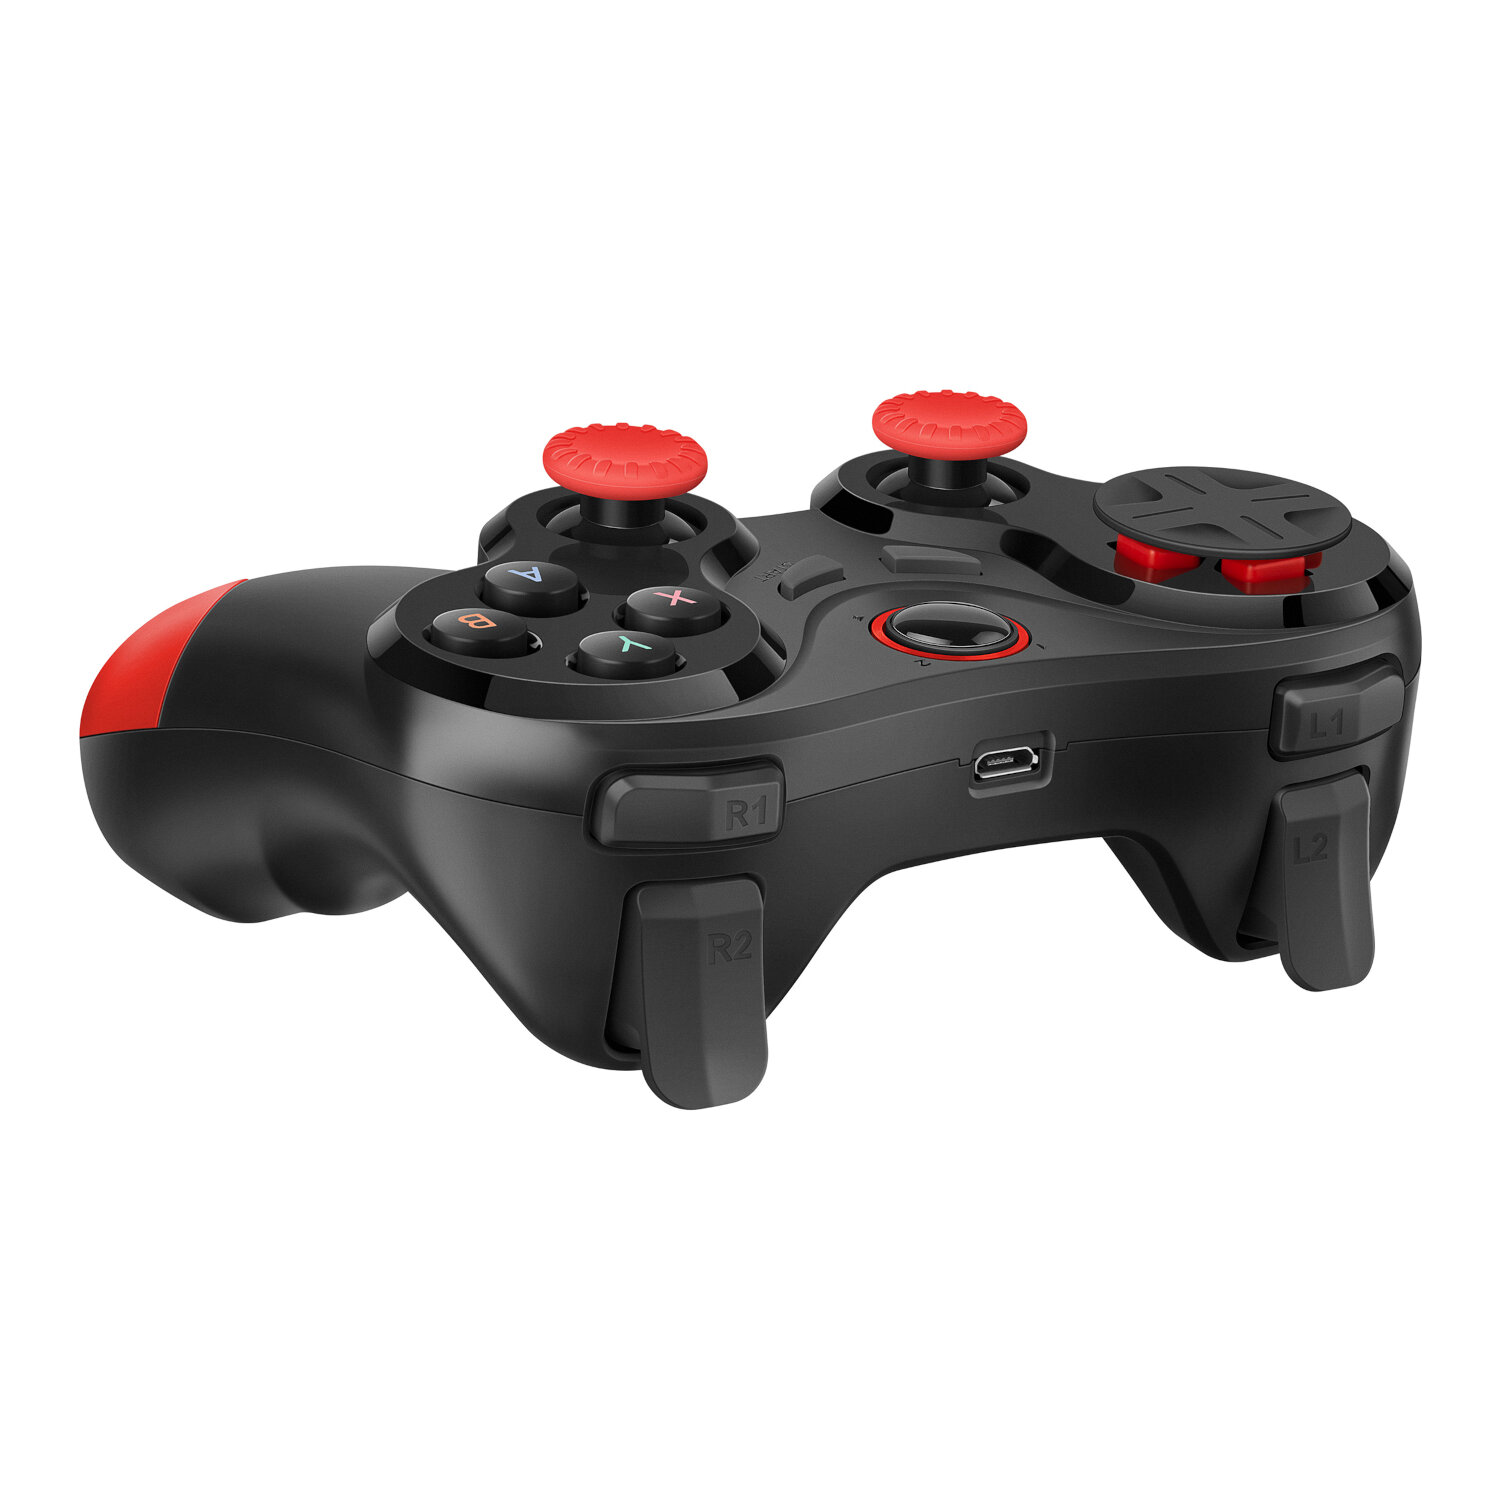 Control USB / Bluetooth* para videojuegos compatible con PC, PS3 y celular 